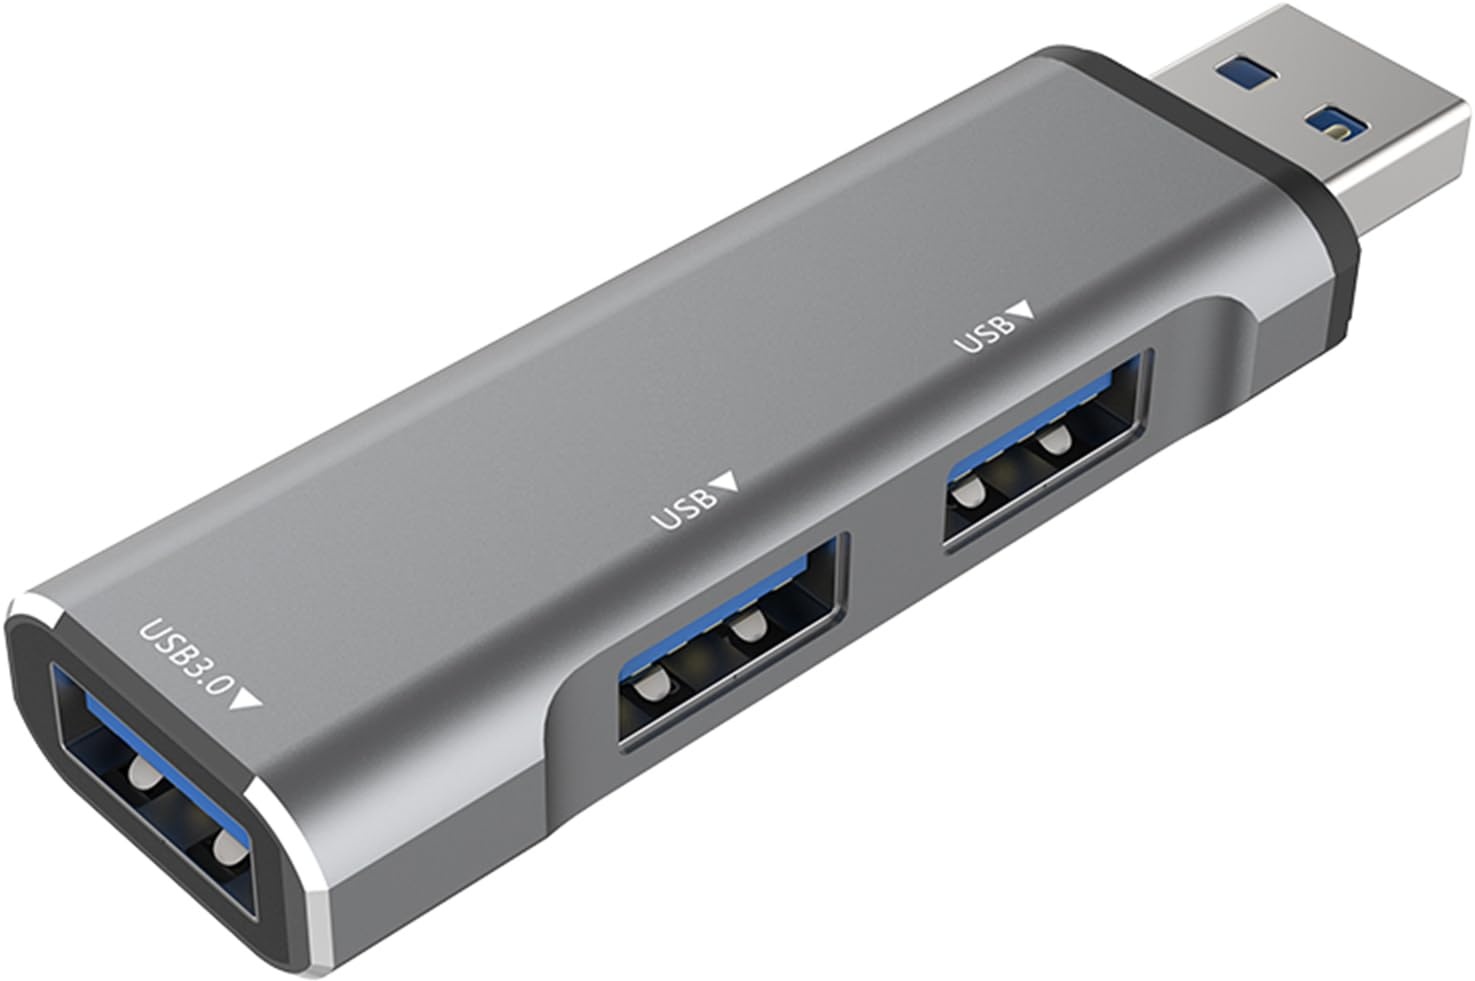 iJiZuo USB Hub, 3 Port USB 3.0 Ultra-Slim Hub, USB Verteiler (1 x USB 3.0 und 2 x USB 2.0), Kompatibel mit MacBook Pro/Air, Desktop, USB Flash Drives, Mobile HDD, PS4/5 und Weiteren Laptops